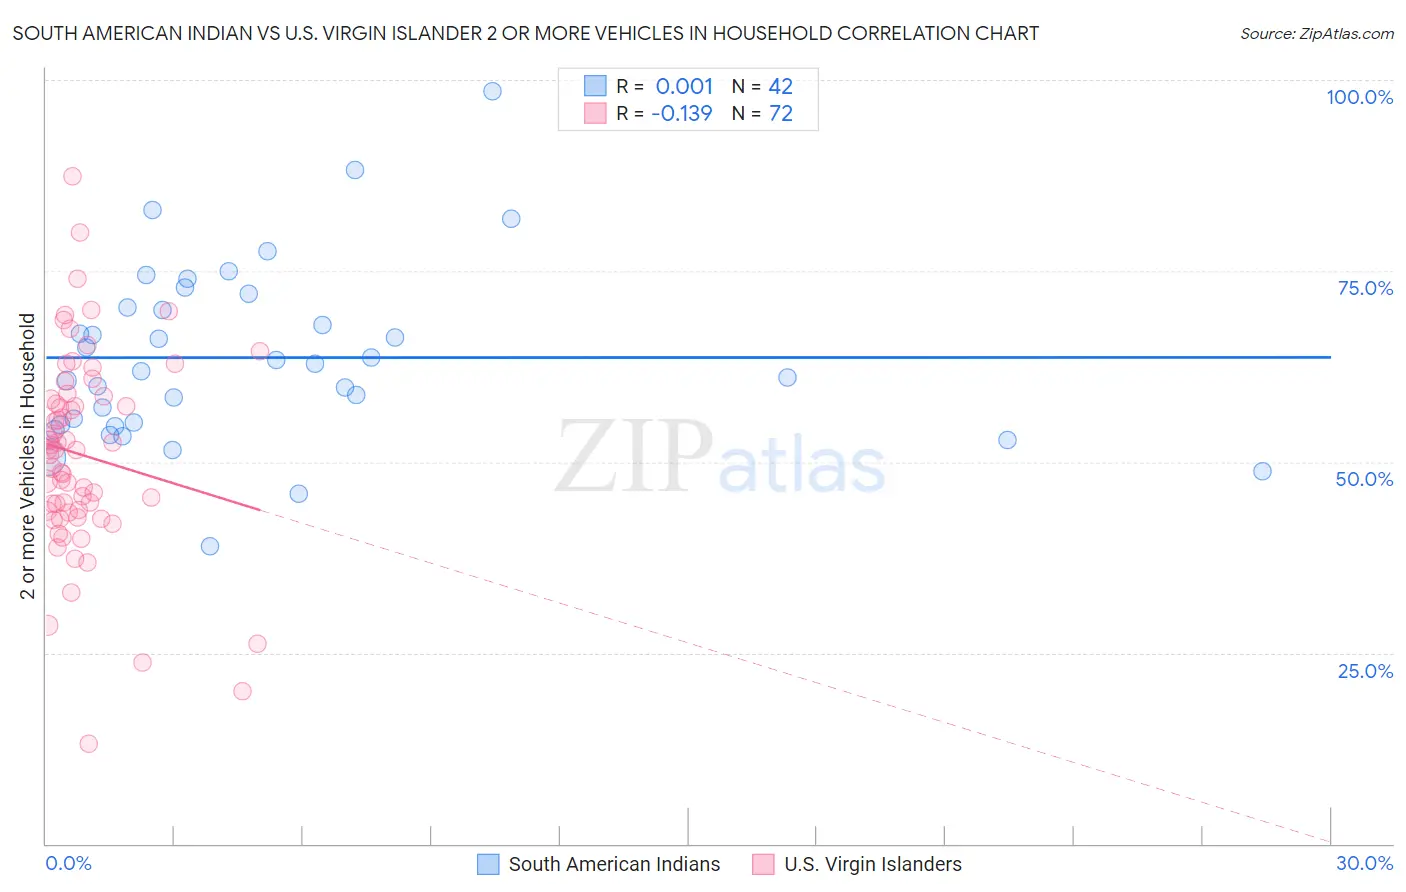 South American Indian vs U.S. Virgin Islander 2 or more Vehicles in Household